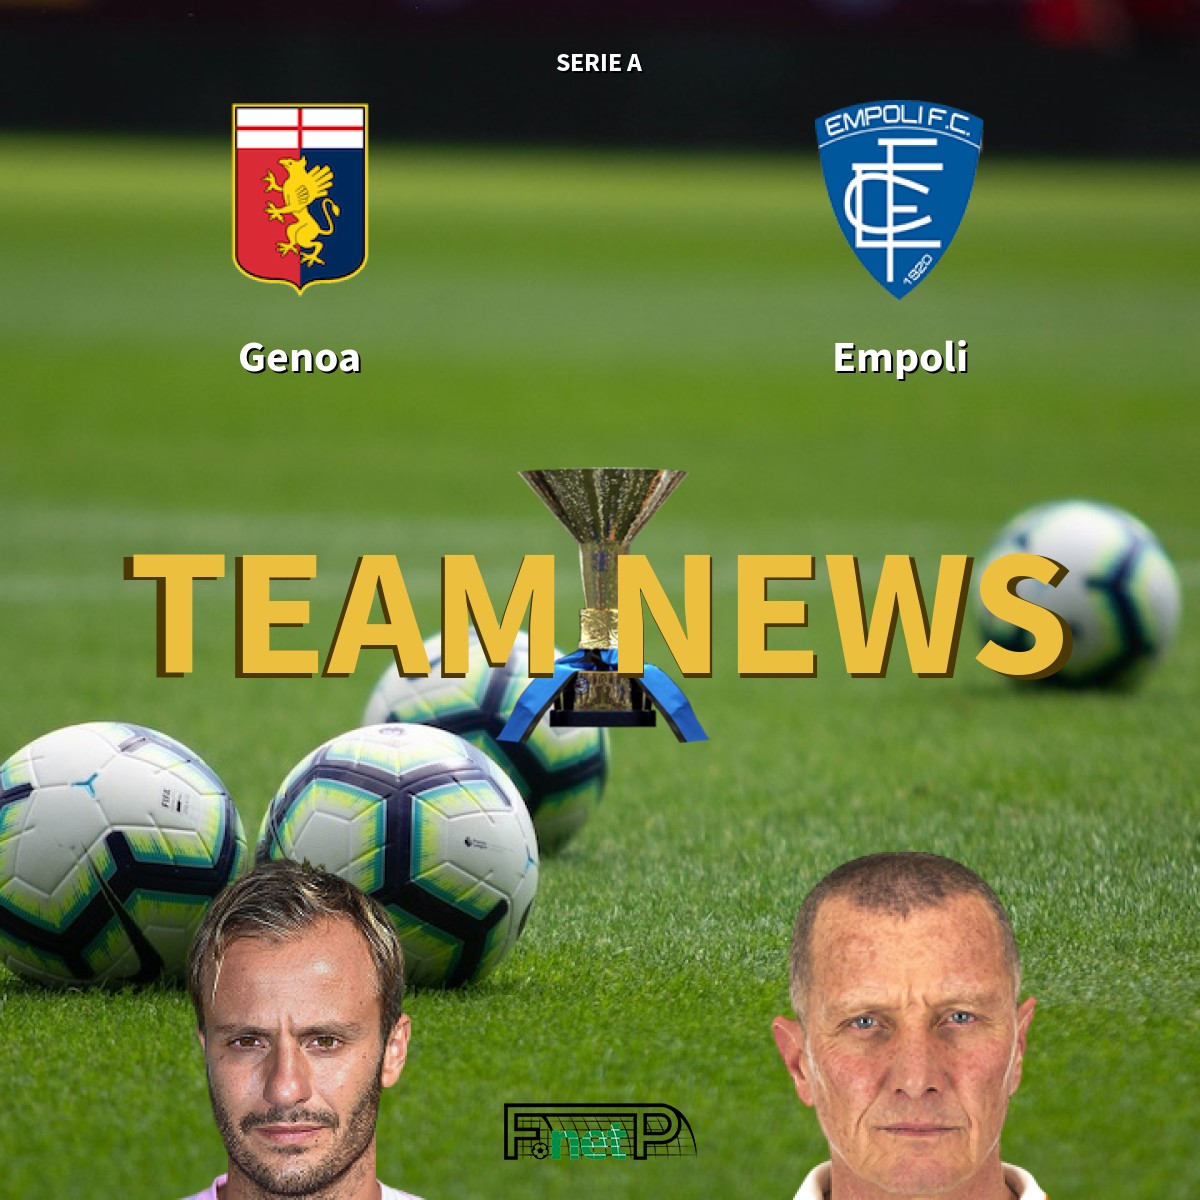 11872356 - Serie A - Genoa vs EmpoliSearch